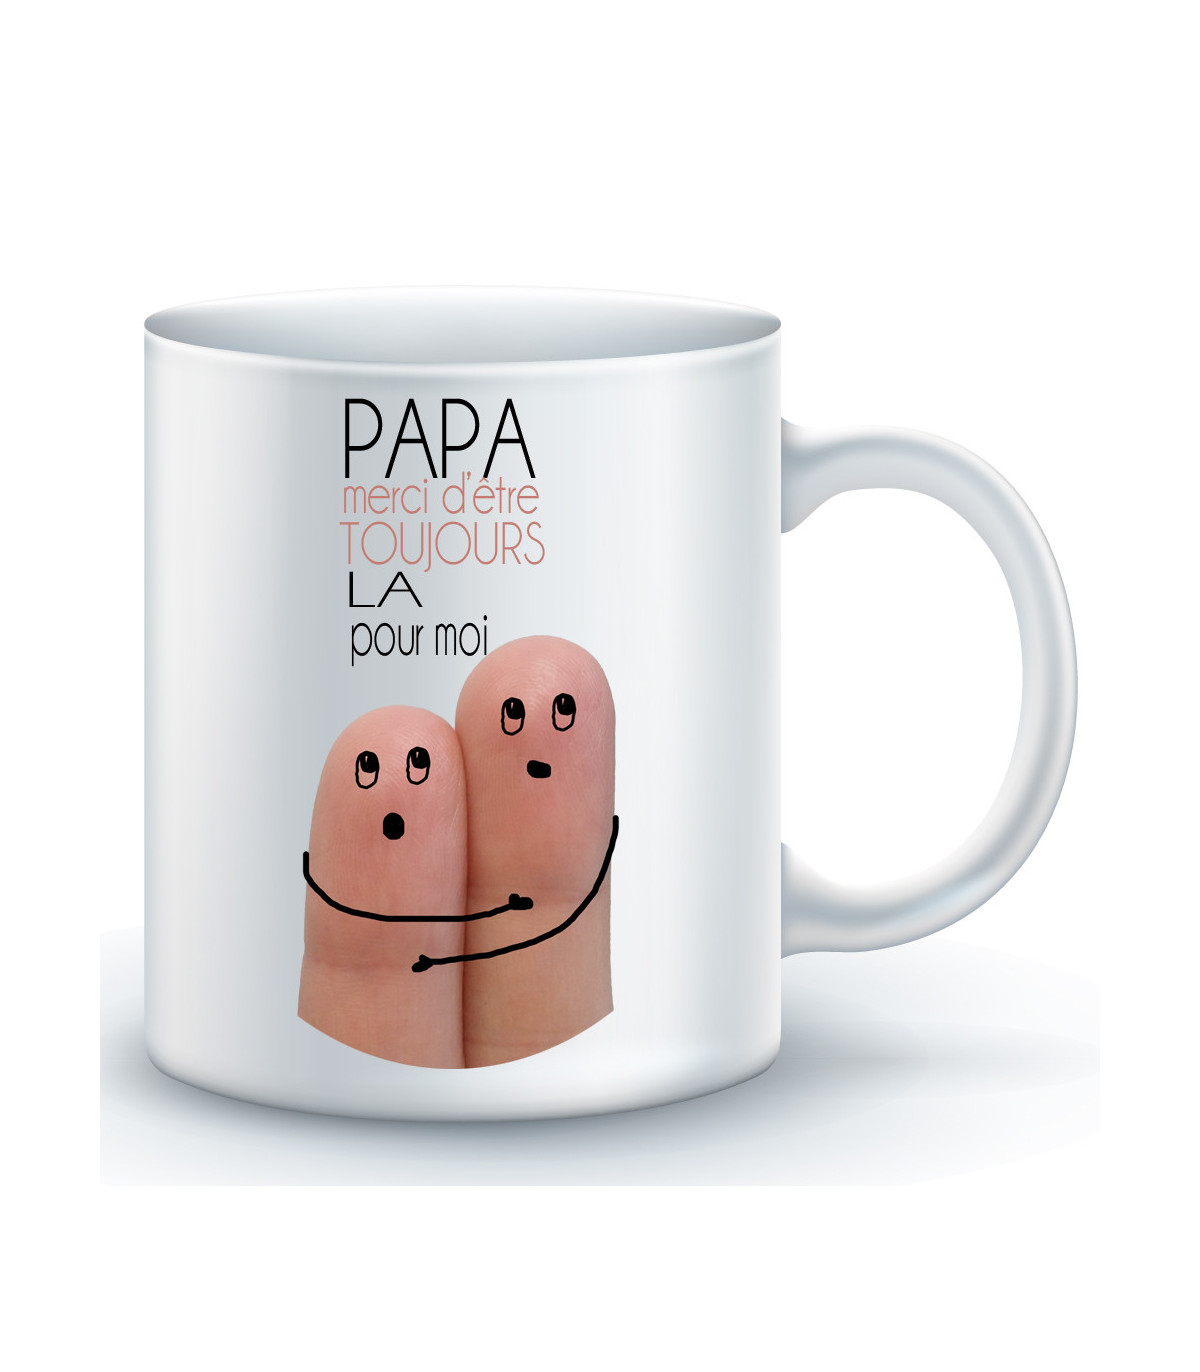 Voici un super petit cadeau pour mon papa que j'aime, un mug